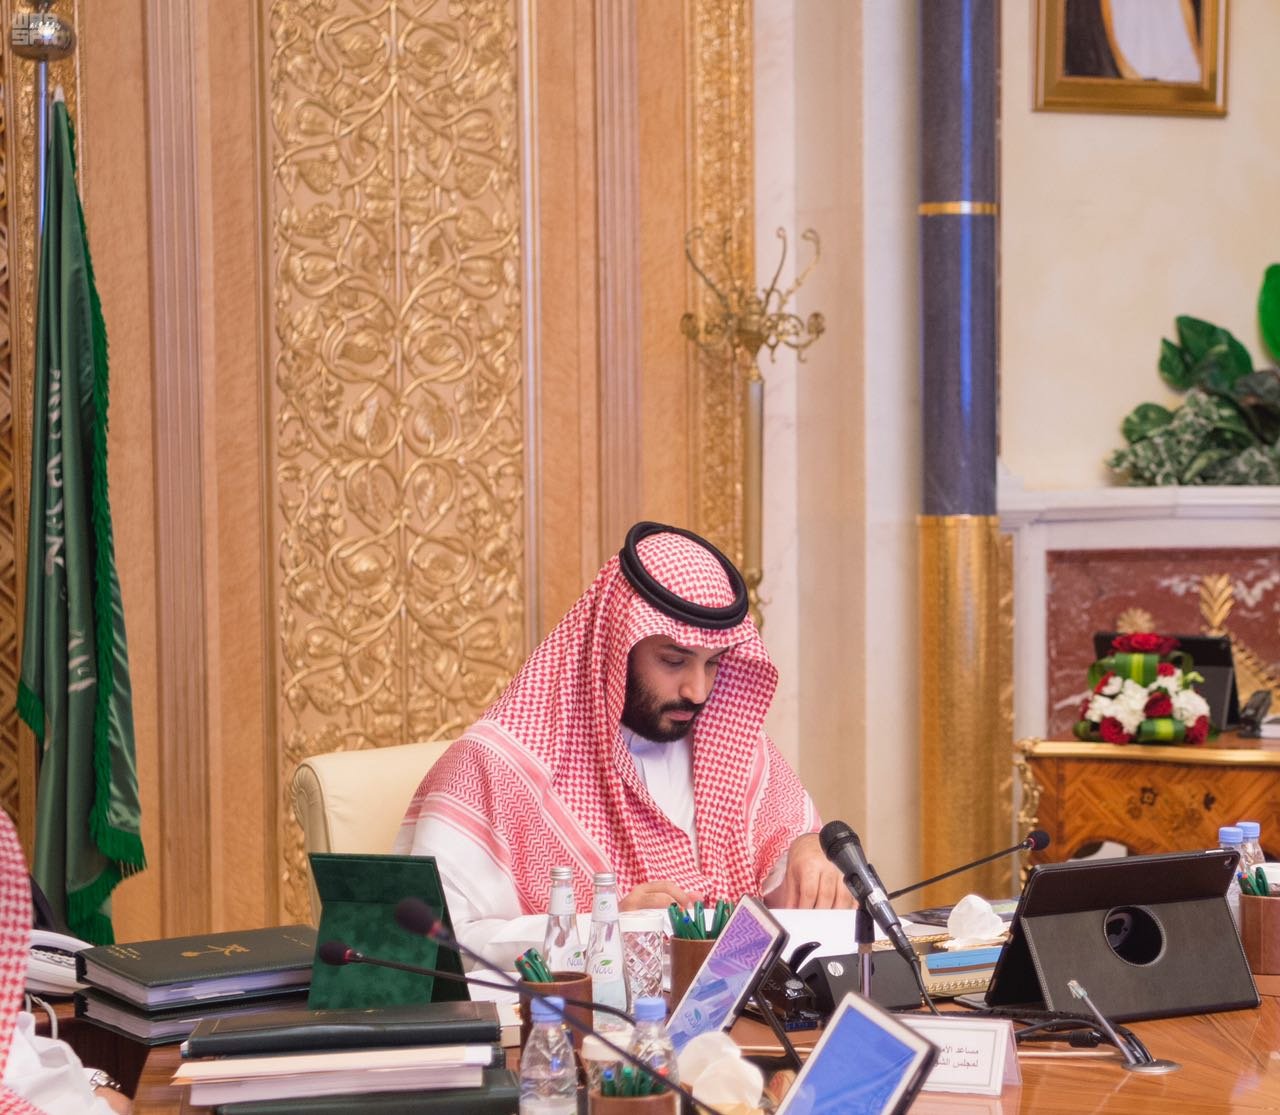 محمد بن سلمان يرأس اجتماع مجلس الشؤون الاقتصادية والتنمية السعودي